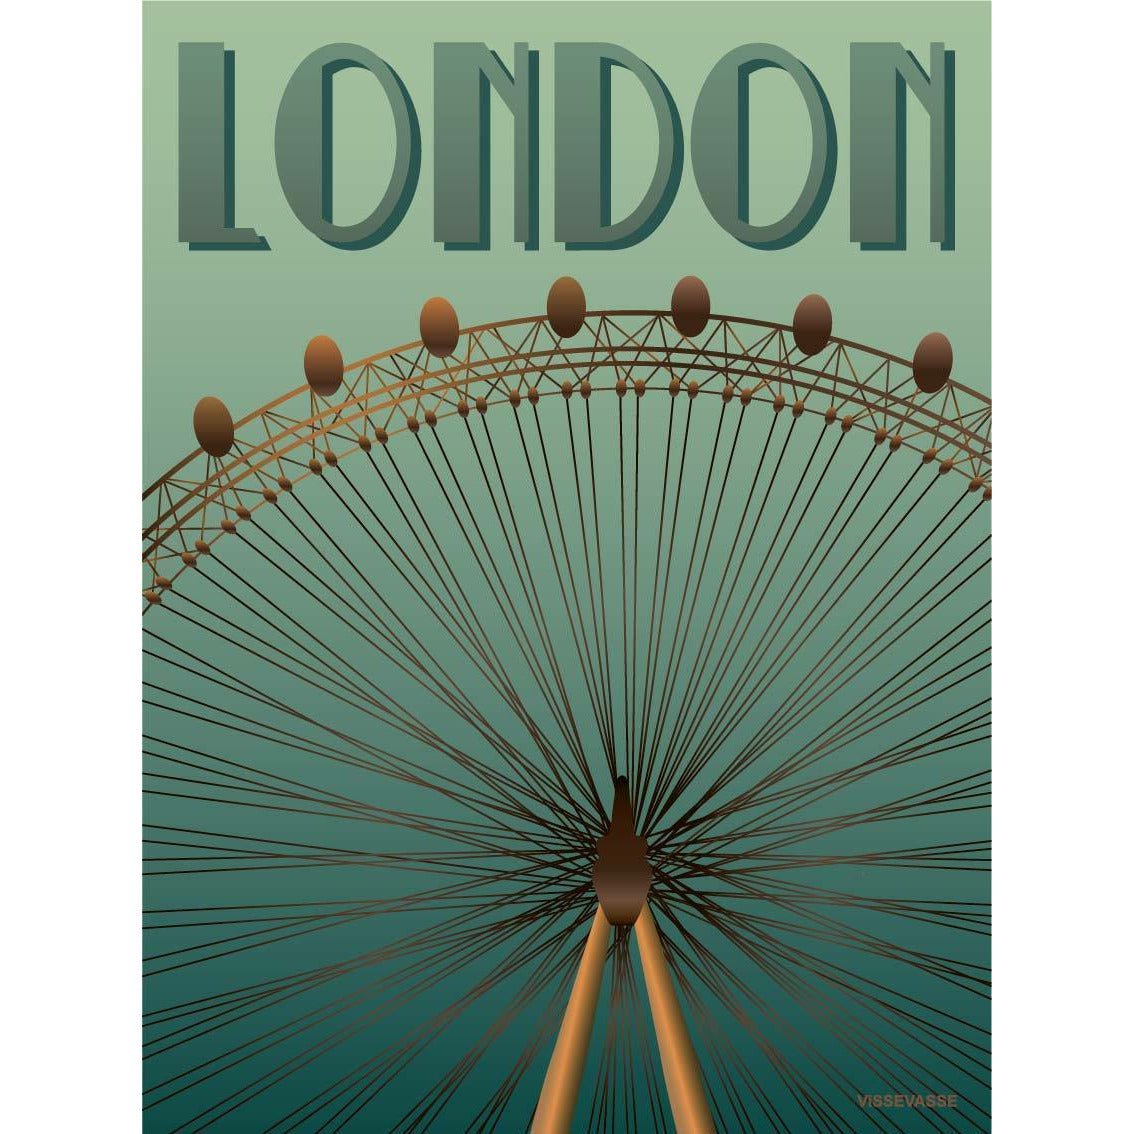 Affiche Vissevasse London Eye, 30 x40 cm